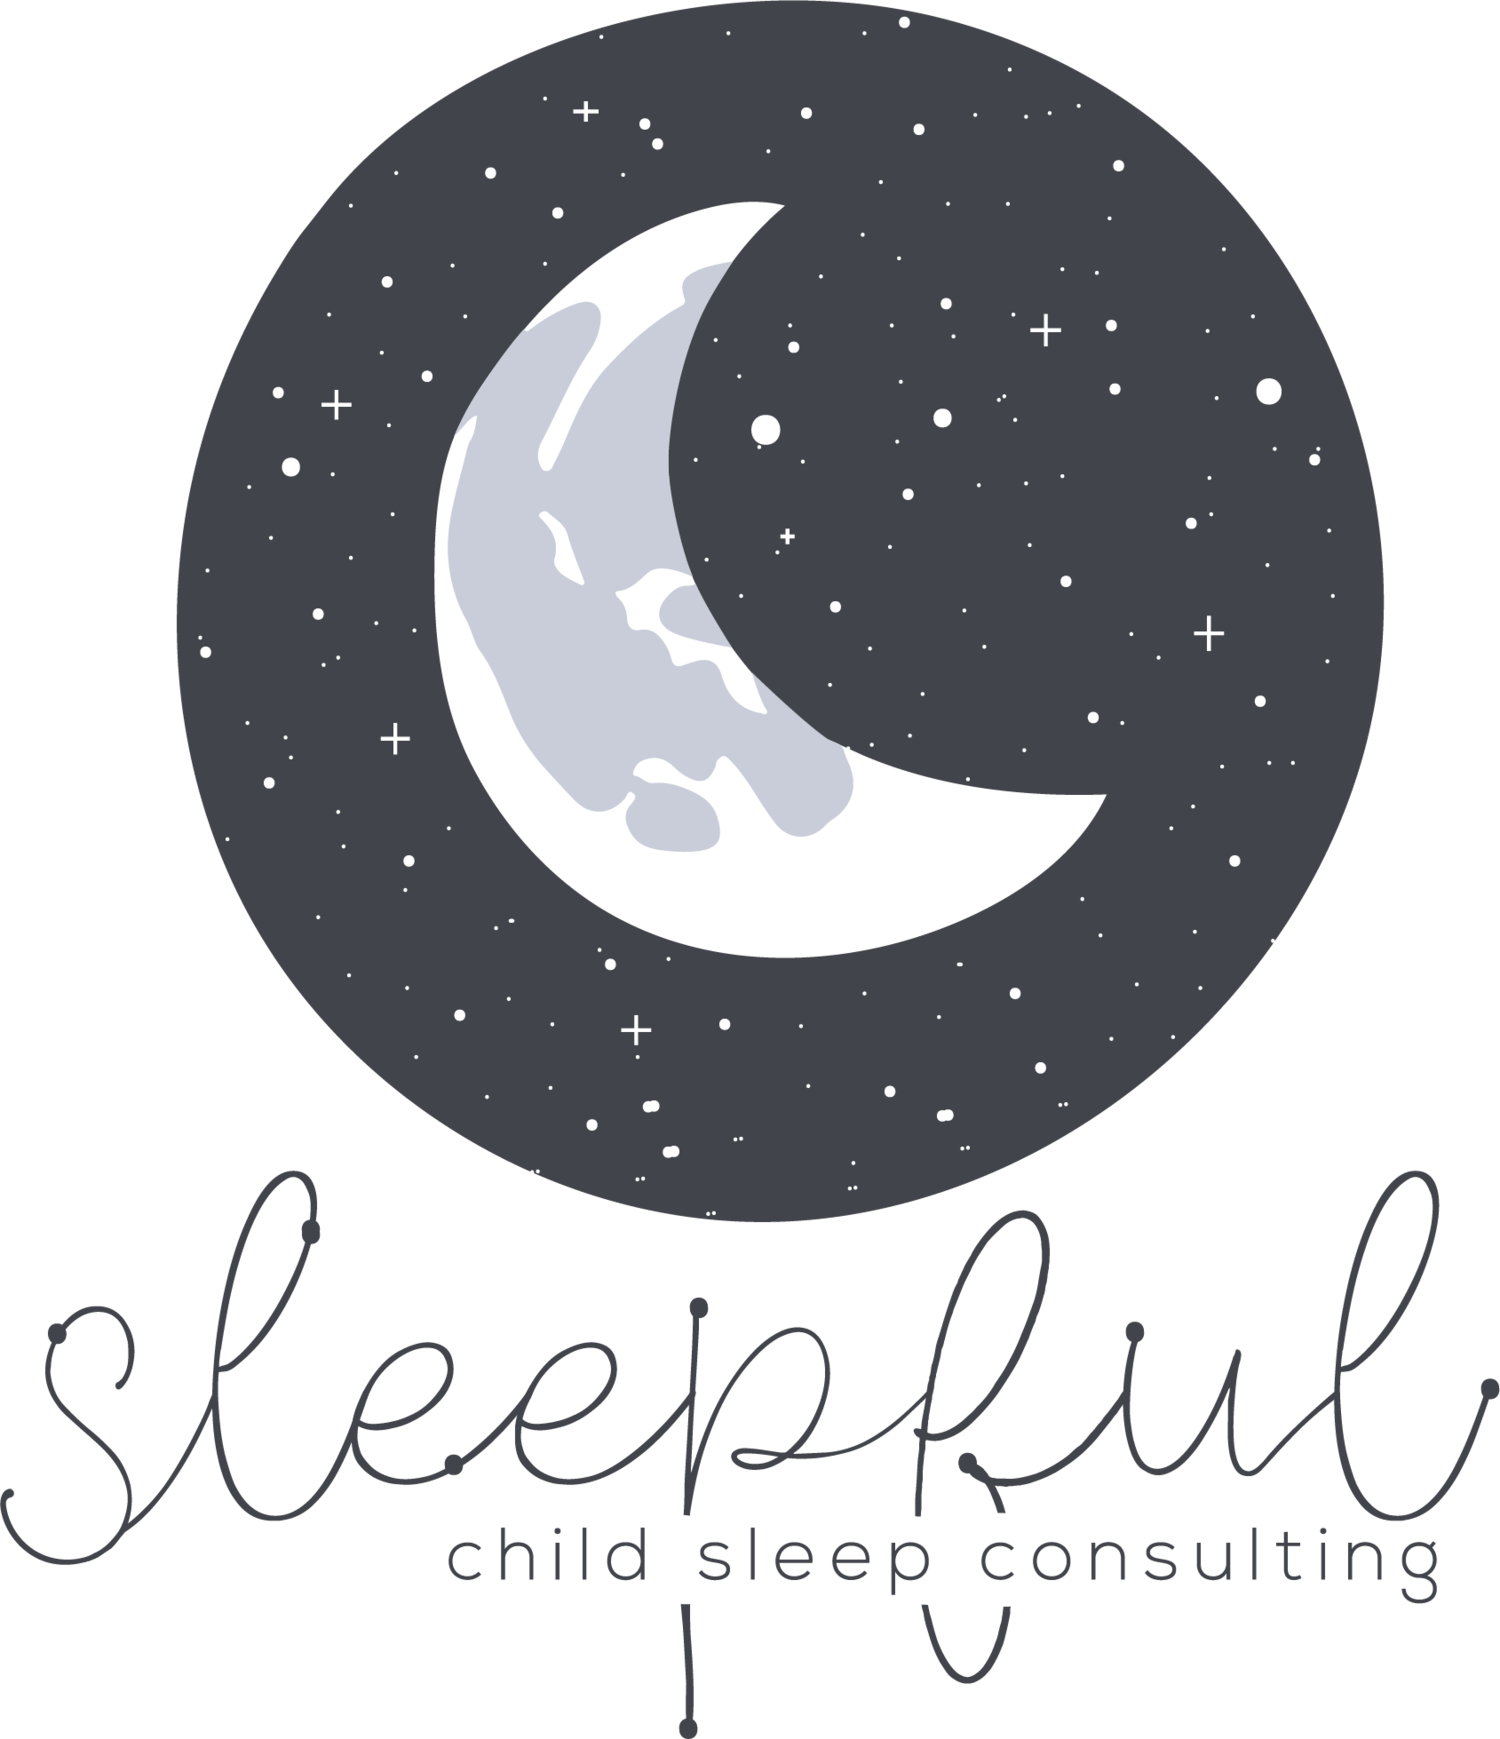 Sleepful: Child Sleep Consulting